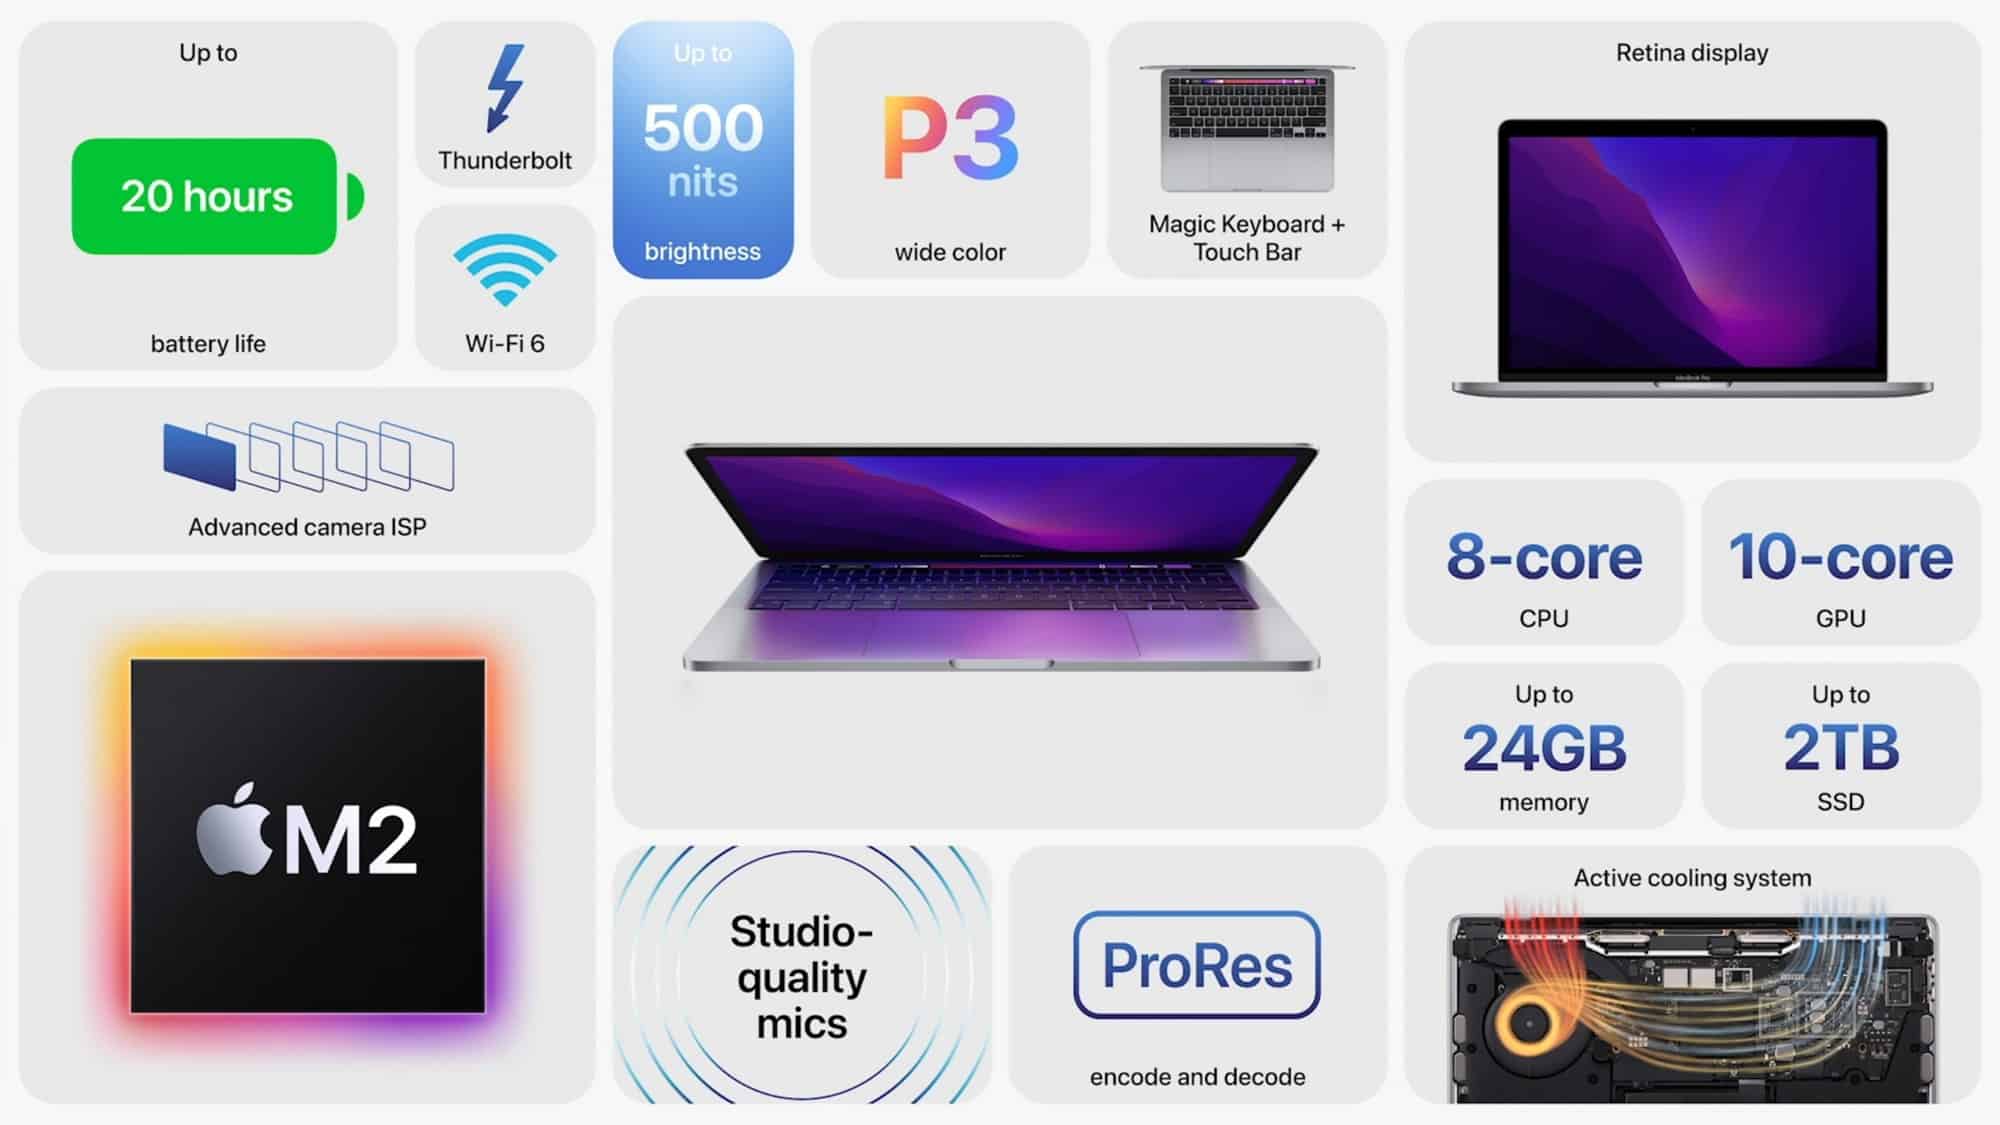 MacBook Pro M2 mới ra mắt với thiết kế không đổi, giá từ 1299 USD